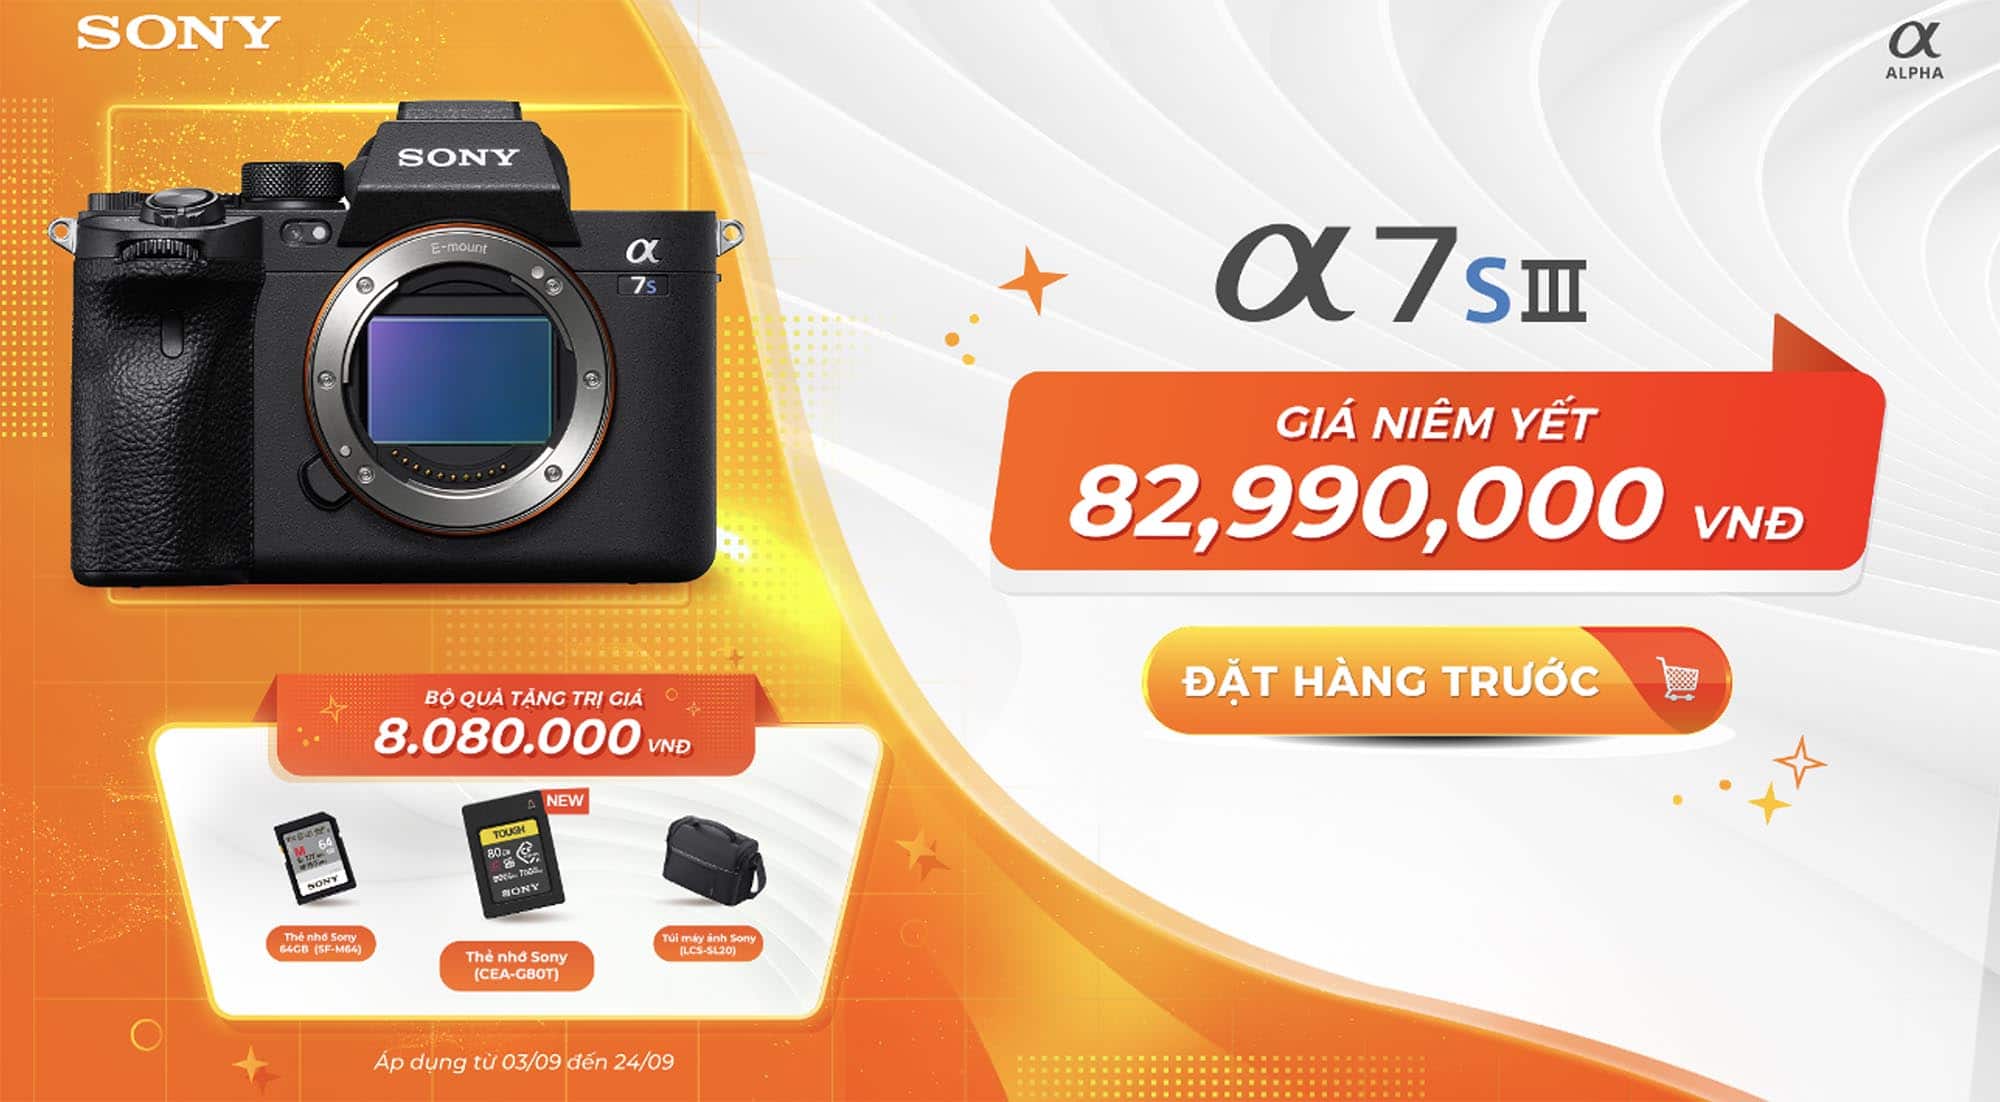 Sony Electronics Việt Nam công bố giá bán máy ảnh Sony Alpha 7S III và chương trình Pre-Order hấp dẫn